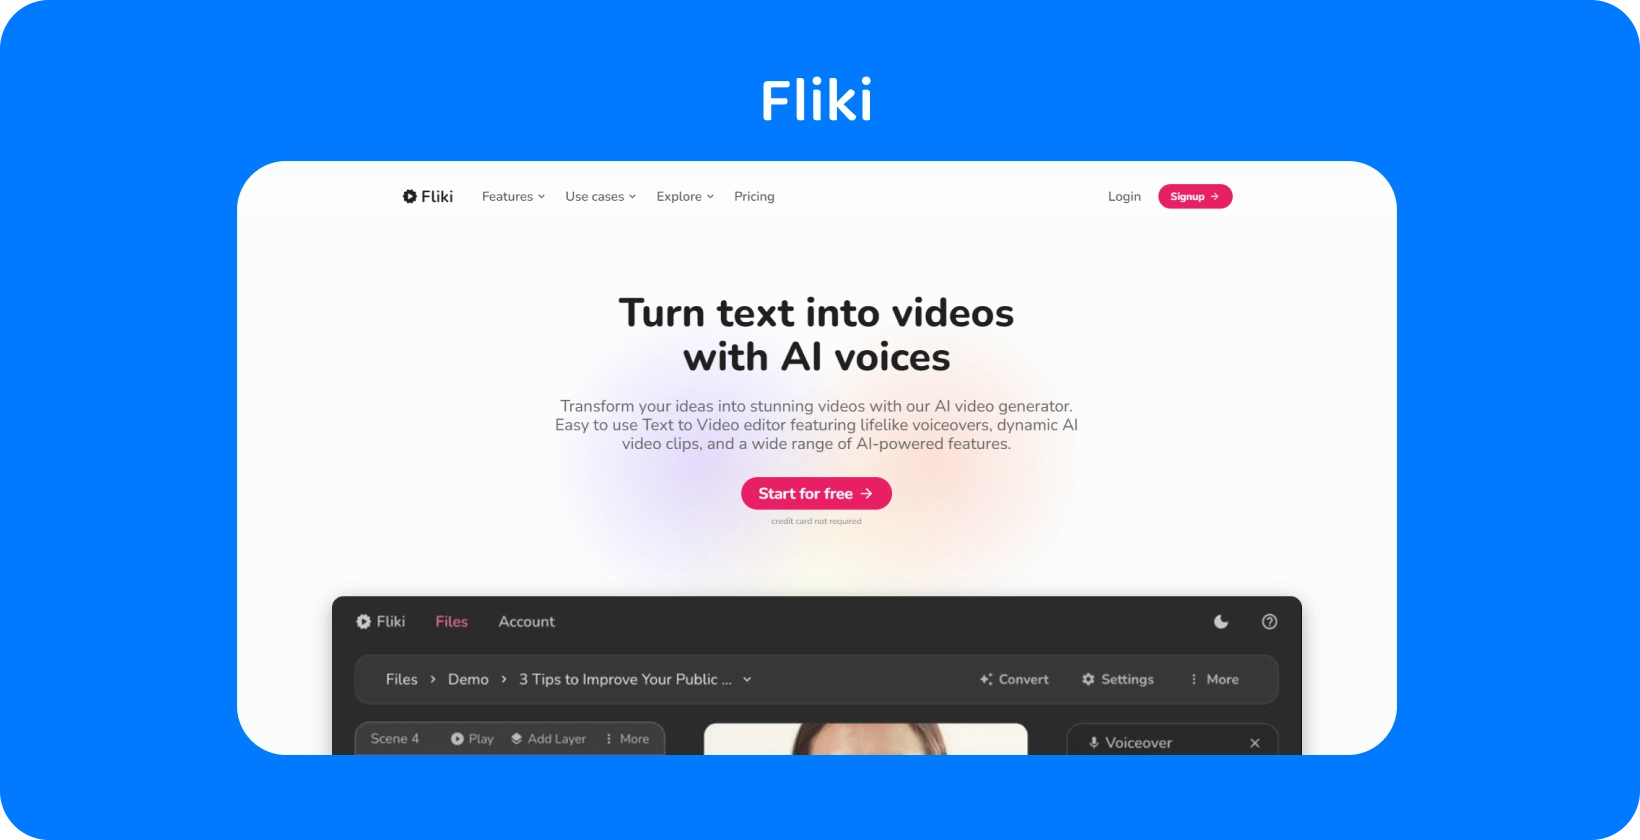 De platformpagina van Fliki laat zien hoe u tekst kunt omzetten in video's met AI stemmen, wat een tekst-naar-video-bewerkingservaring biedt.